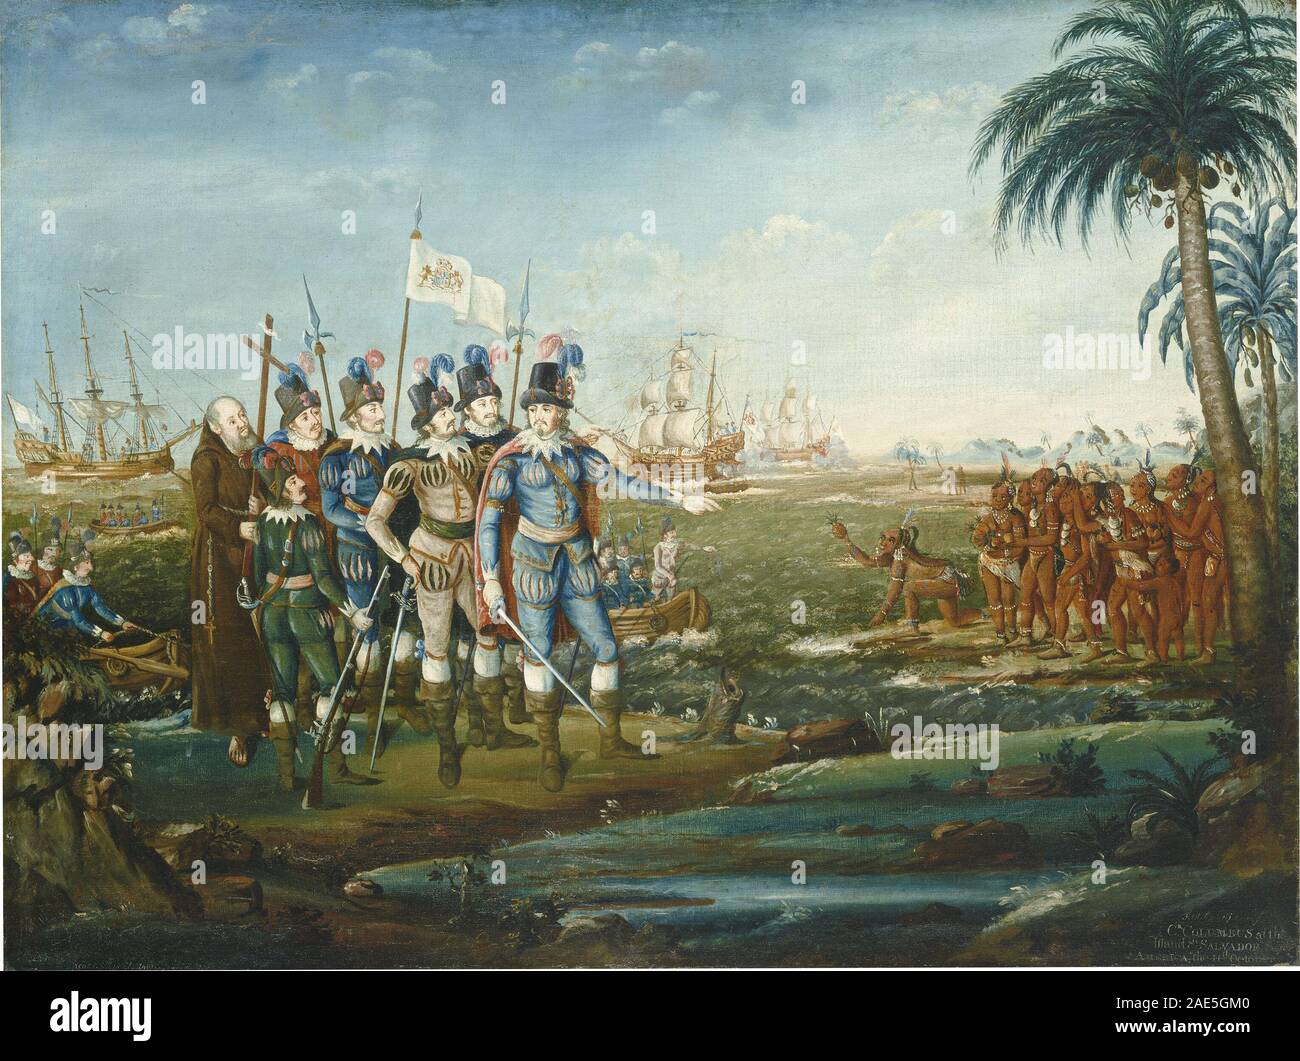 Premier débarquement de Christophe Colomb ; Frederick Kemmelmeyer 1800/1805, premier débarquement de Christophe Colomb, 1800-1805 Banque D'Images